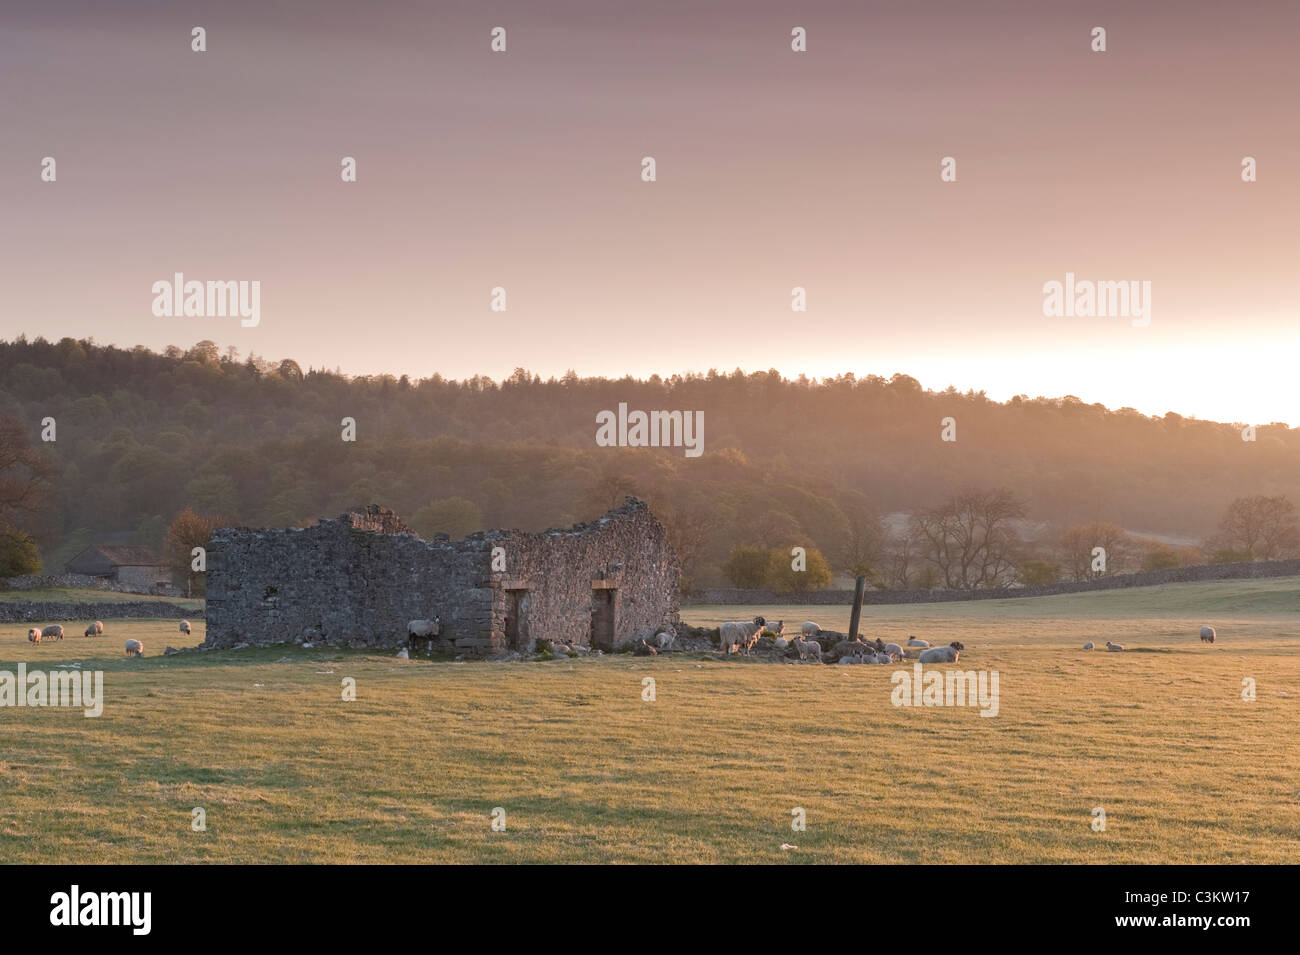 Ruine rustique ancienne grange ruine dans le champ de moutons en début de matinée lumière du soleil au lever du soleil (paysage rural pittoresque) - Wharfedale, Yorkshire Dales, Angleterre Royaume-Uni. Banque D'Images